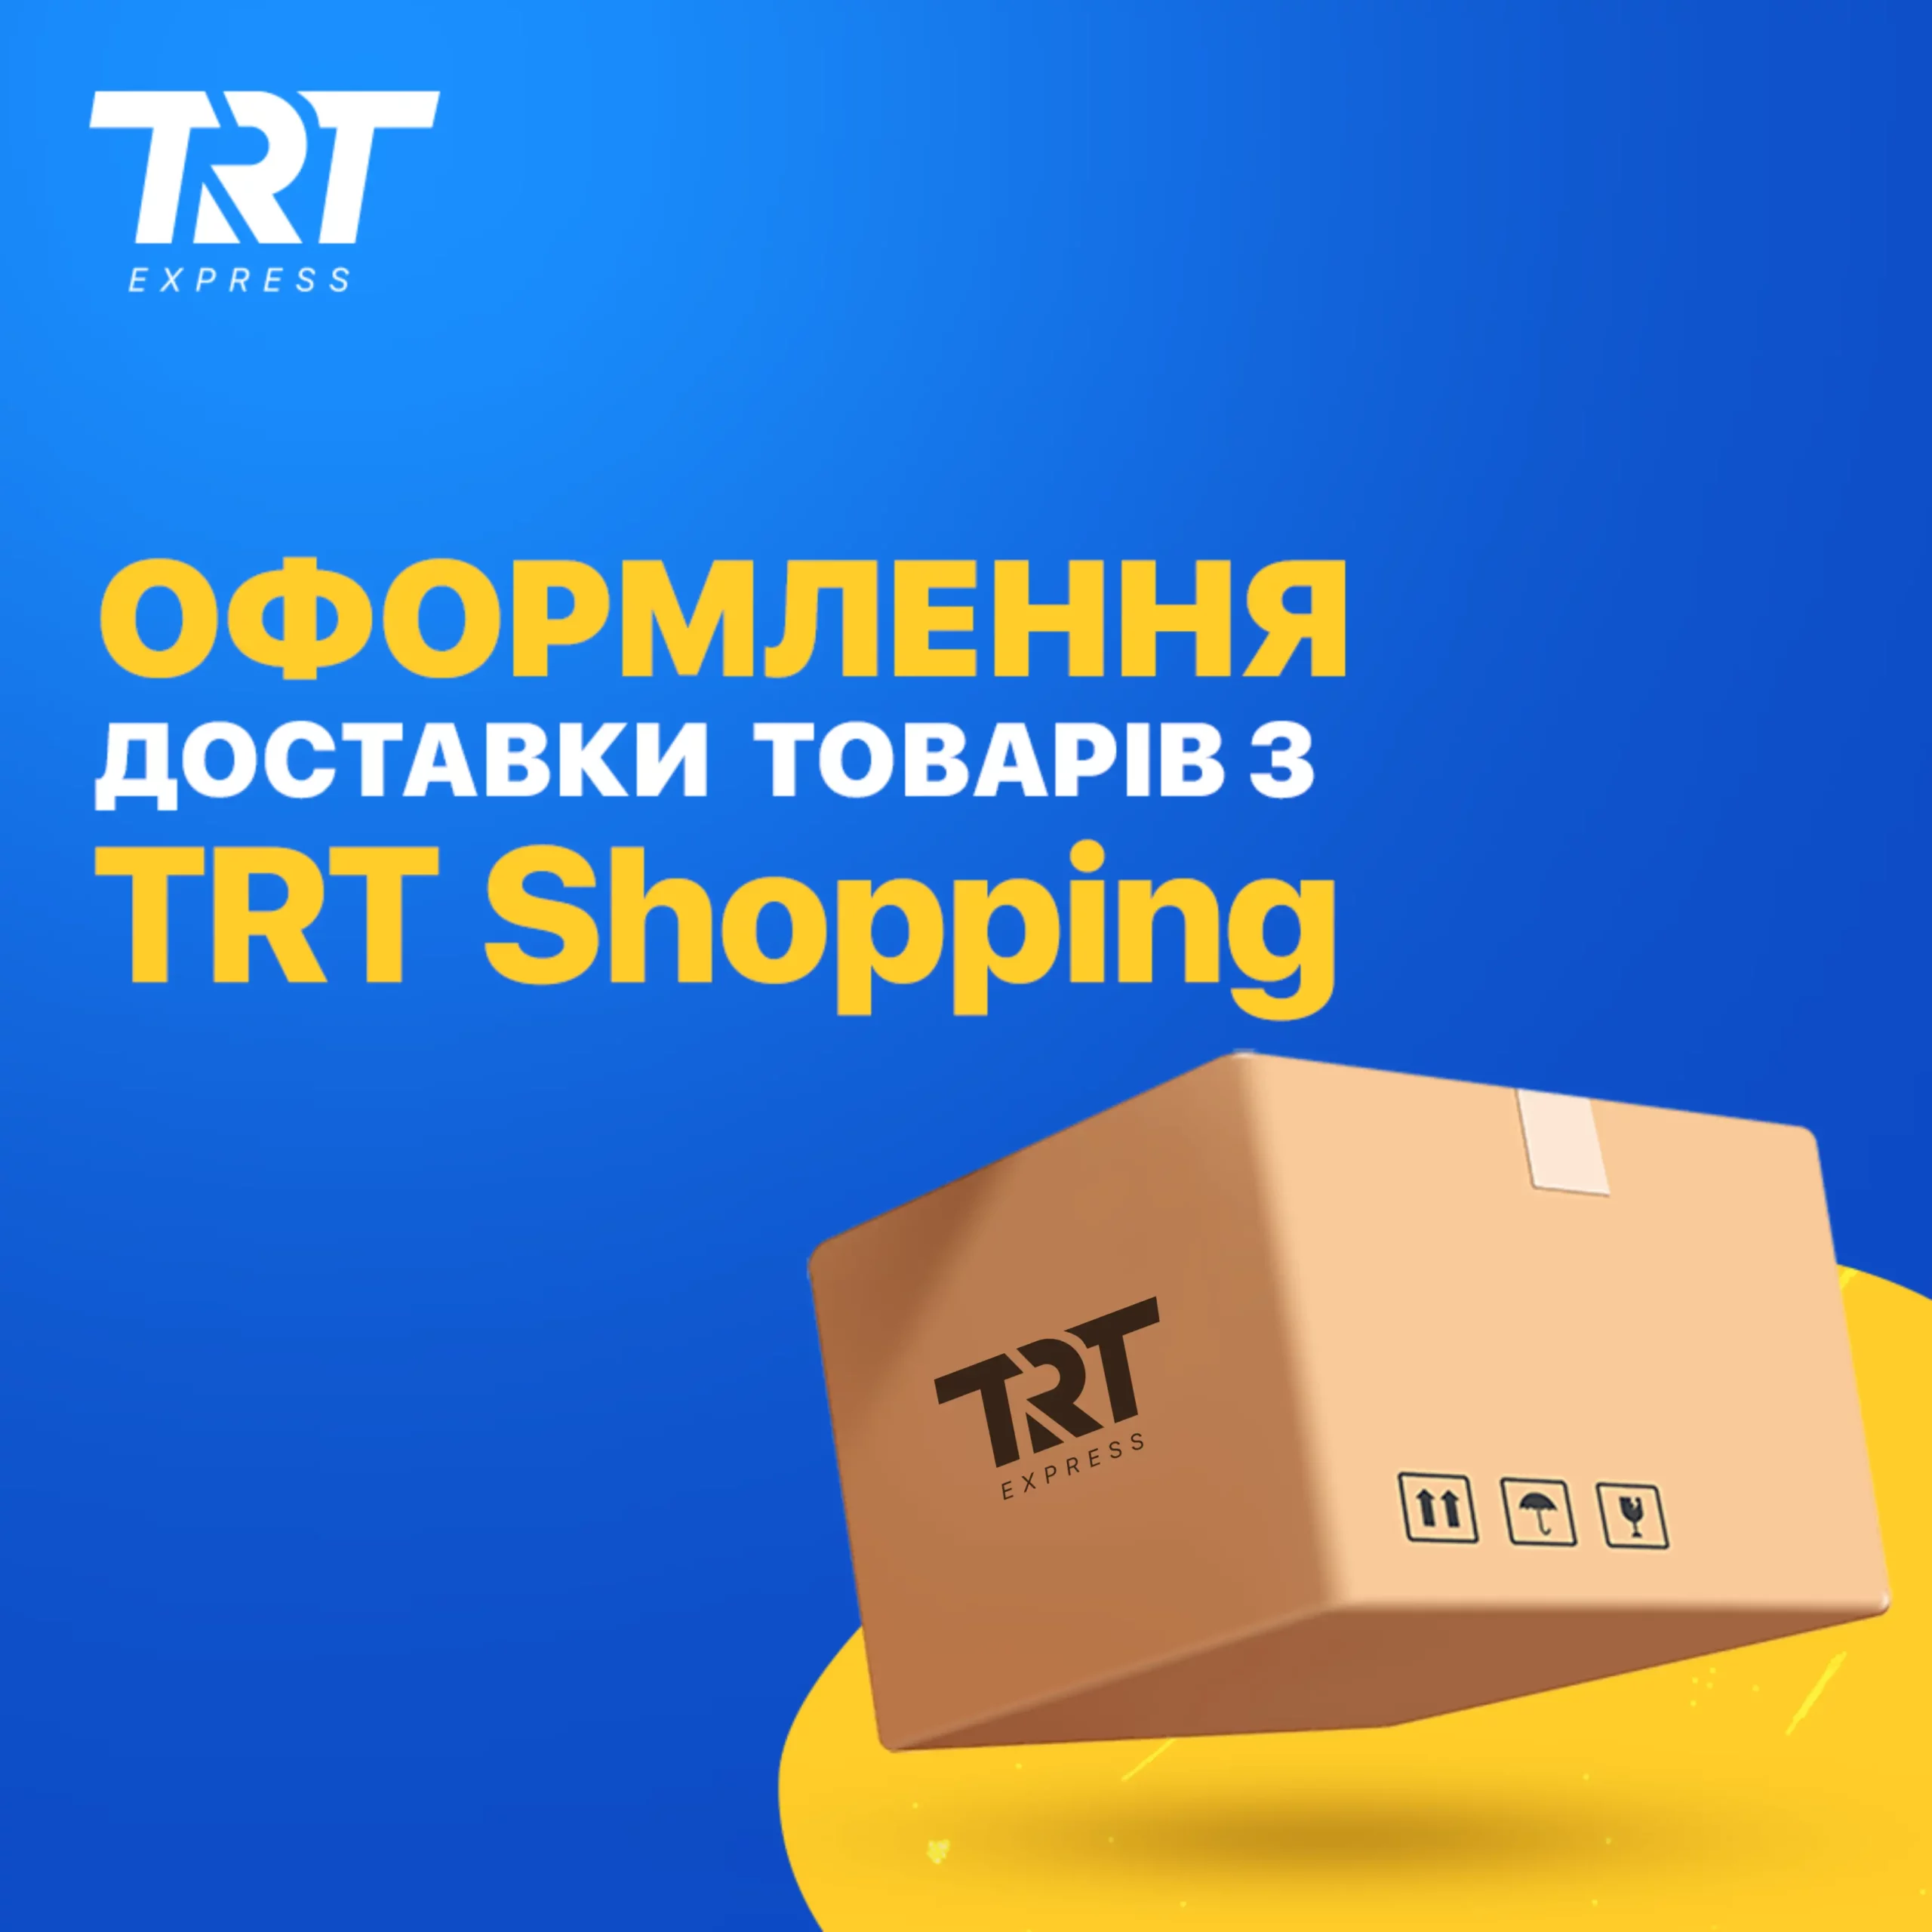 TRT Shopping